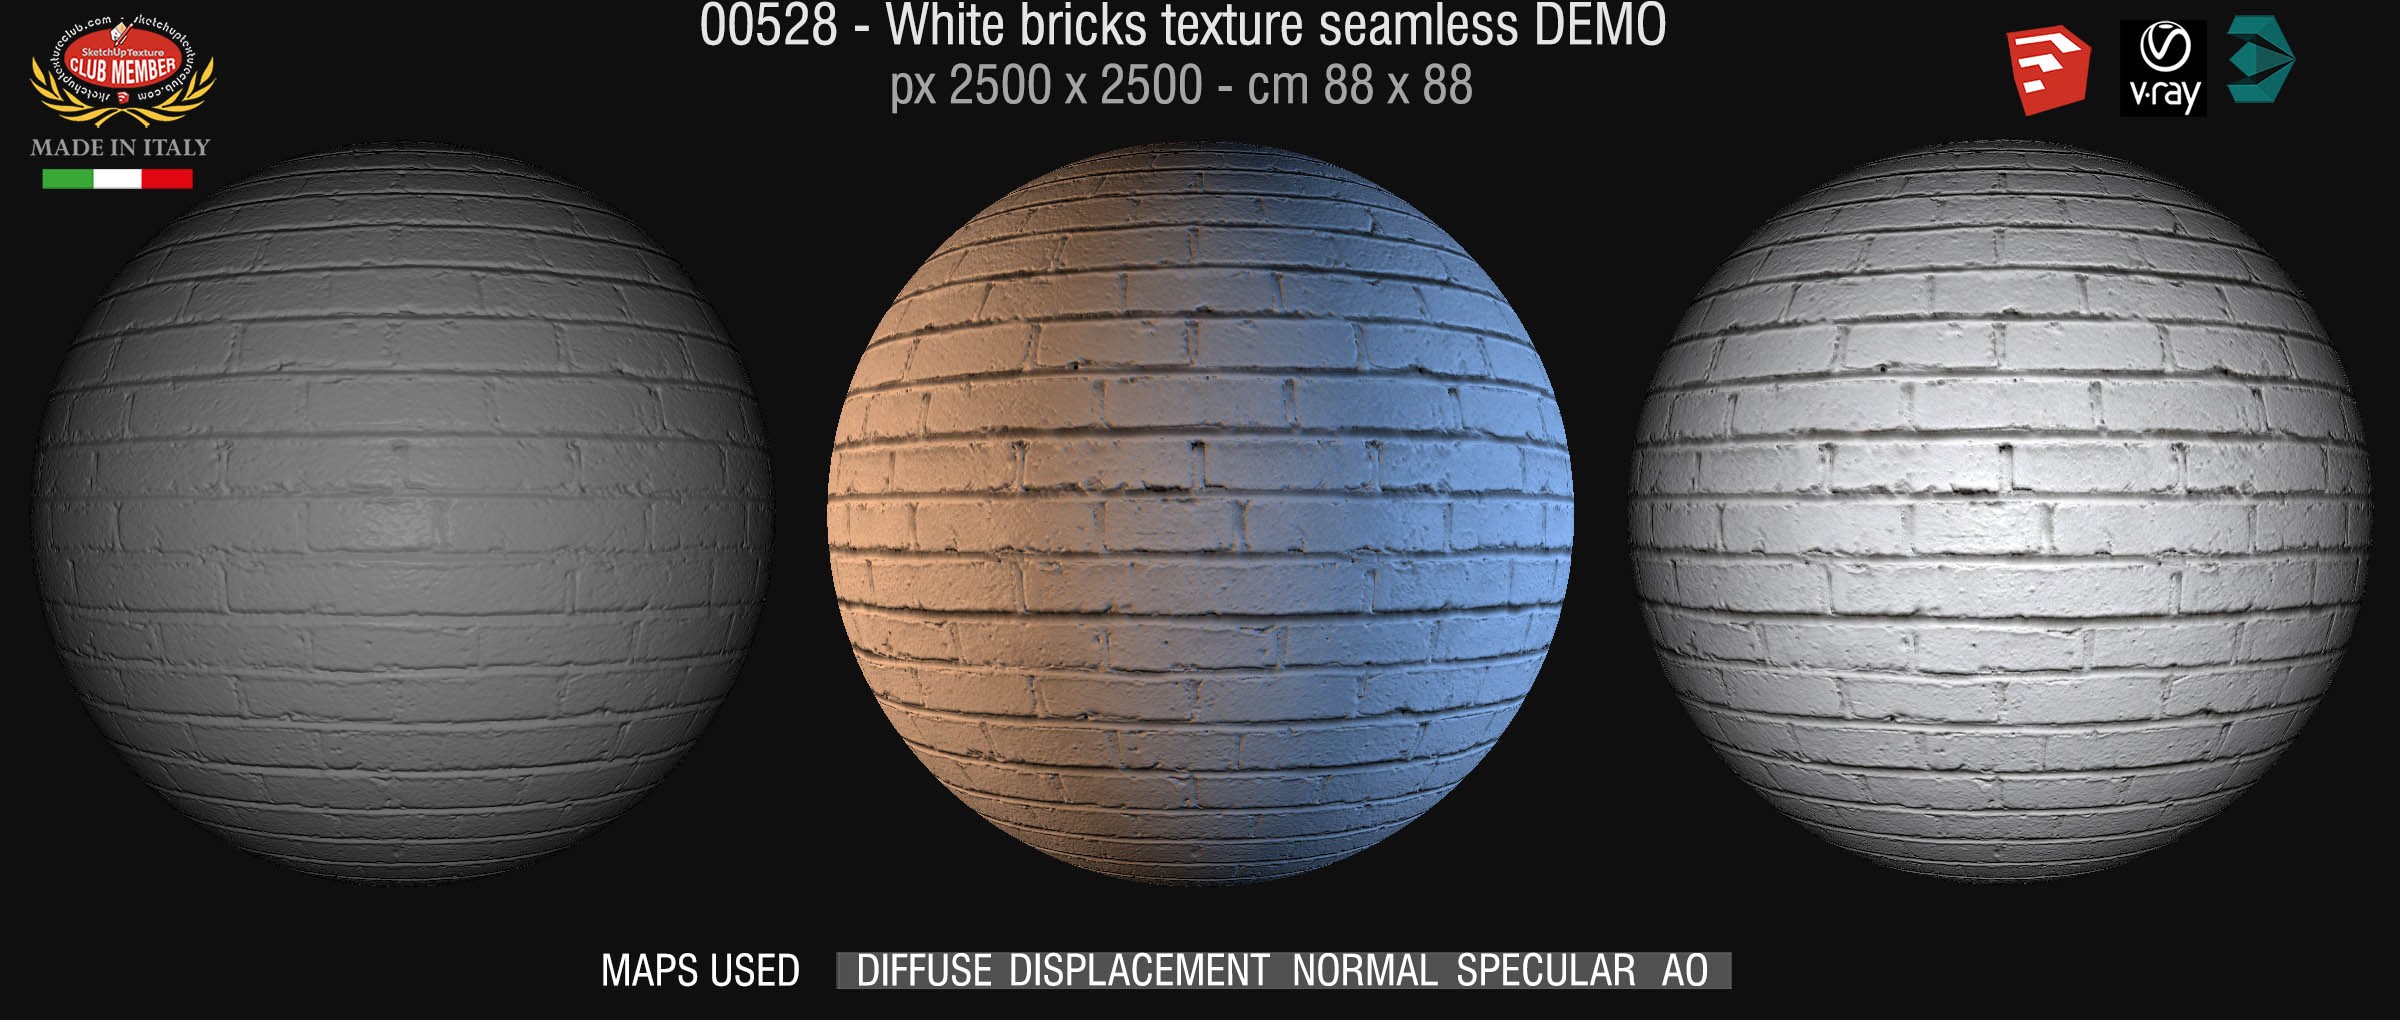 00527 White bricks texture seamless + maps DEMO